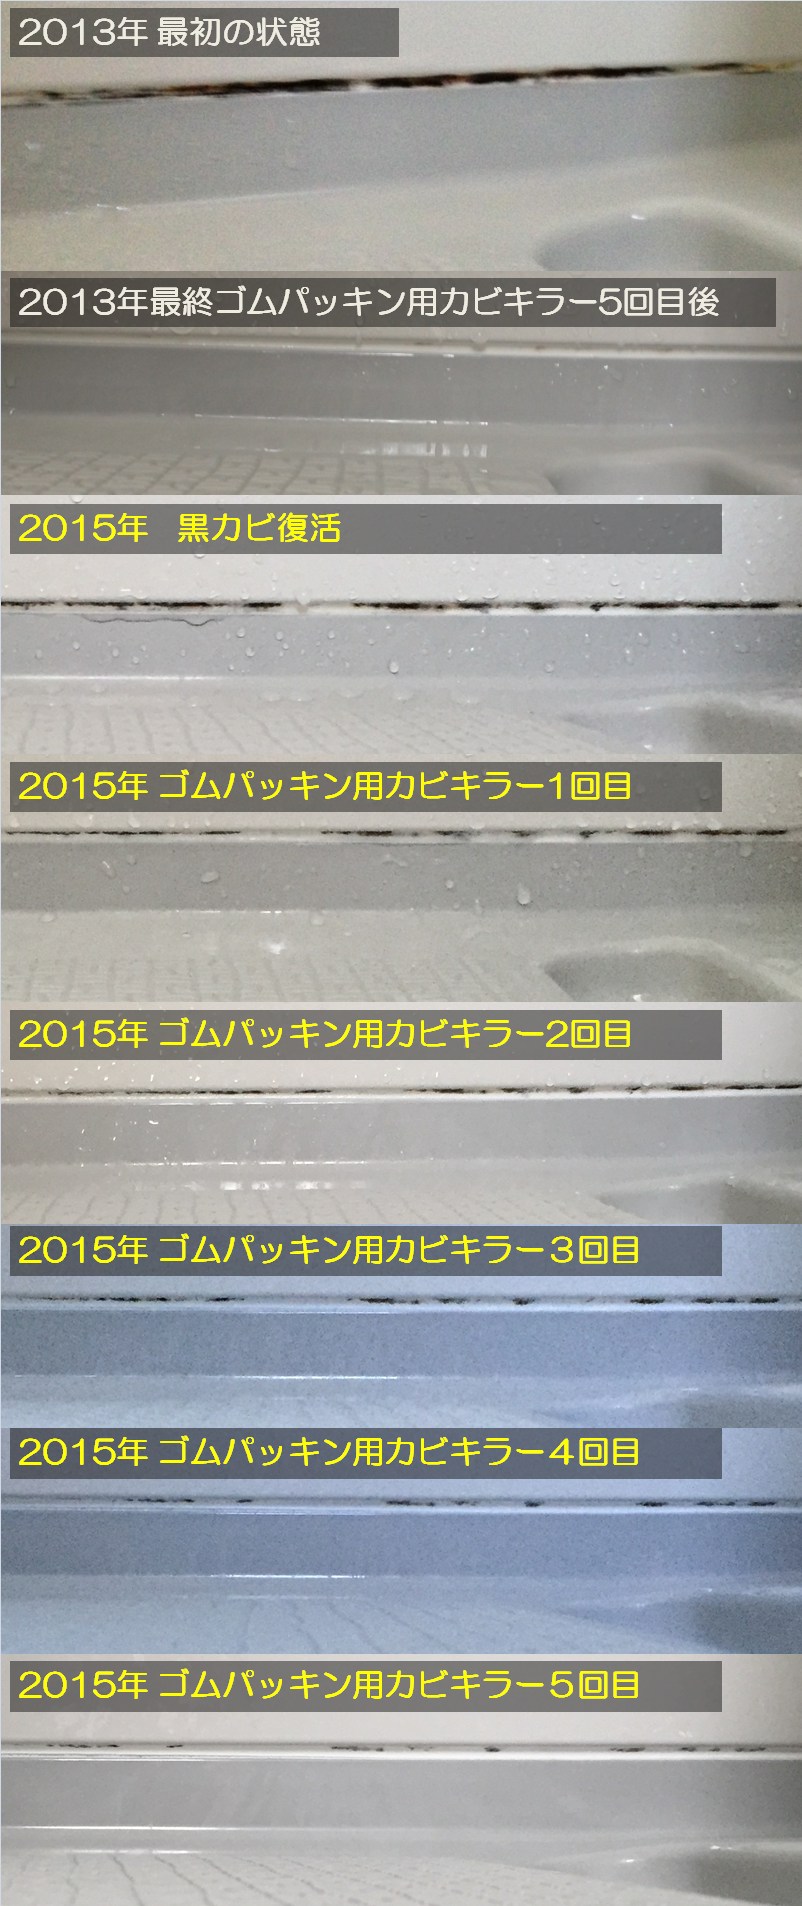 2015年黒カビにゴムパッキン用カビキラー塗布３・４・５回目